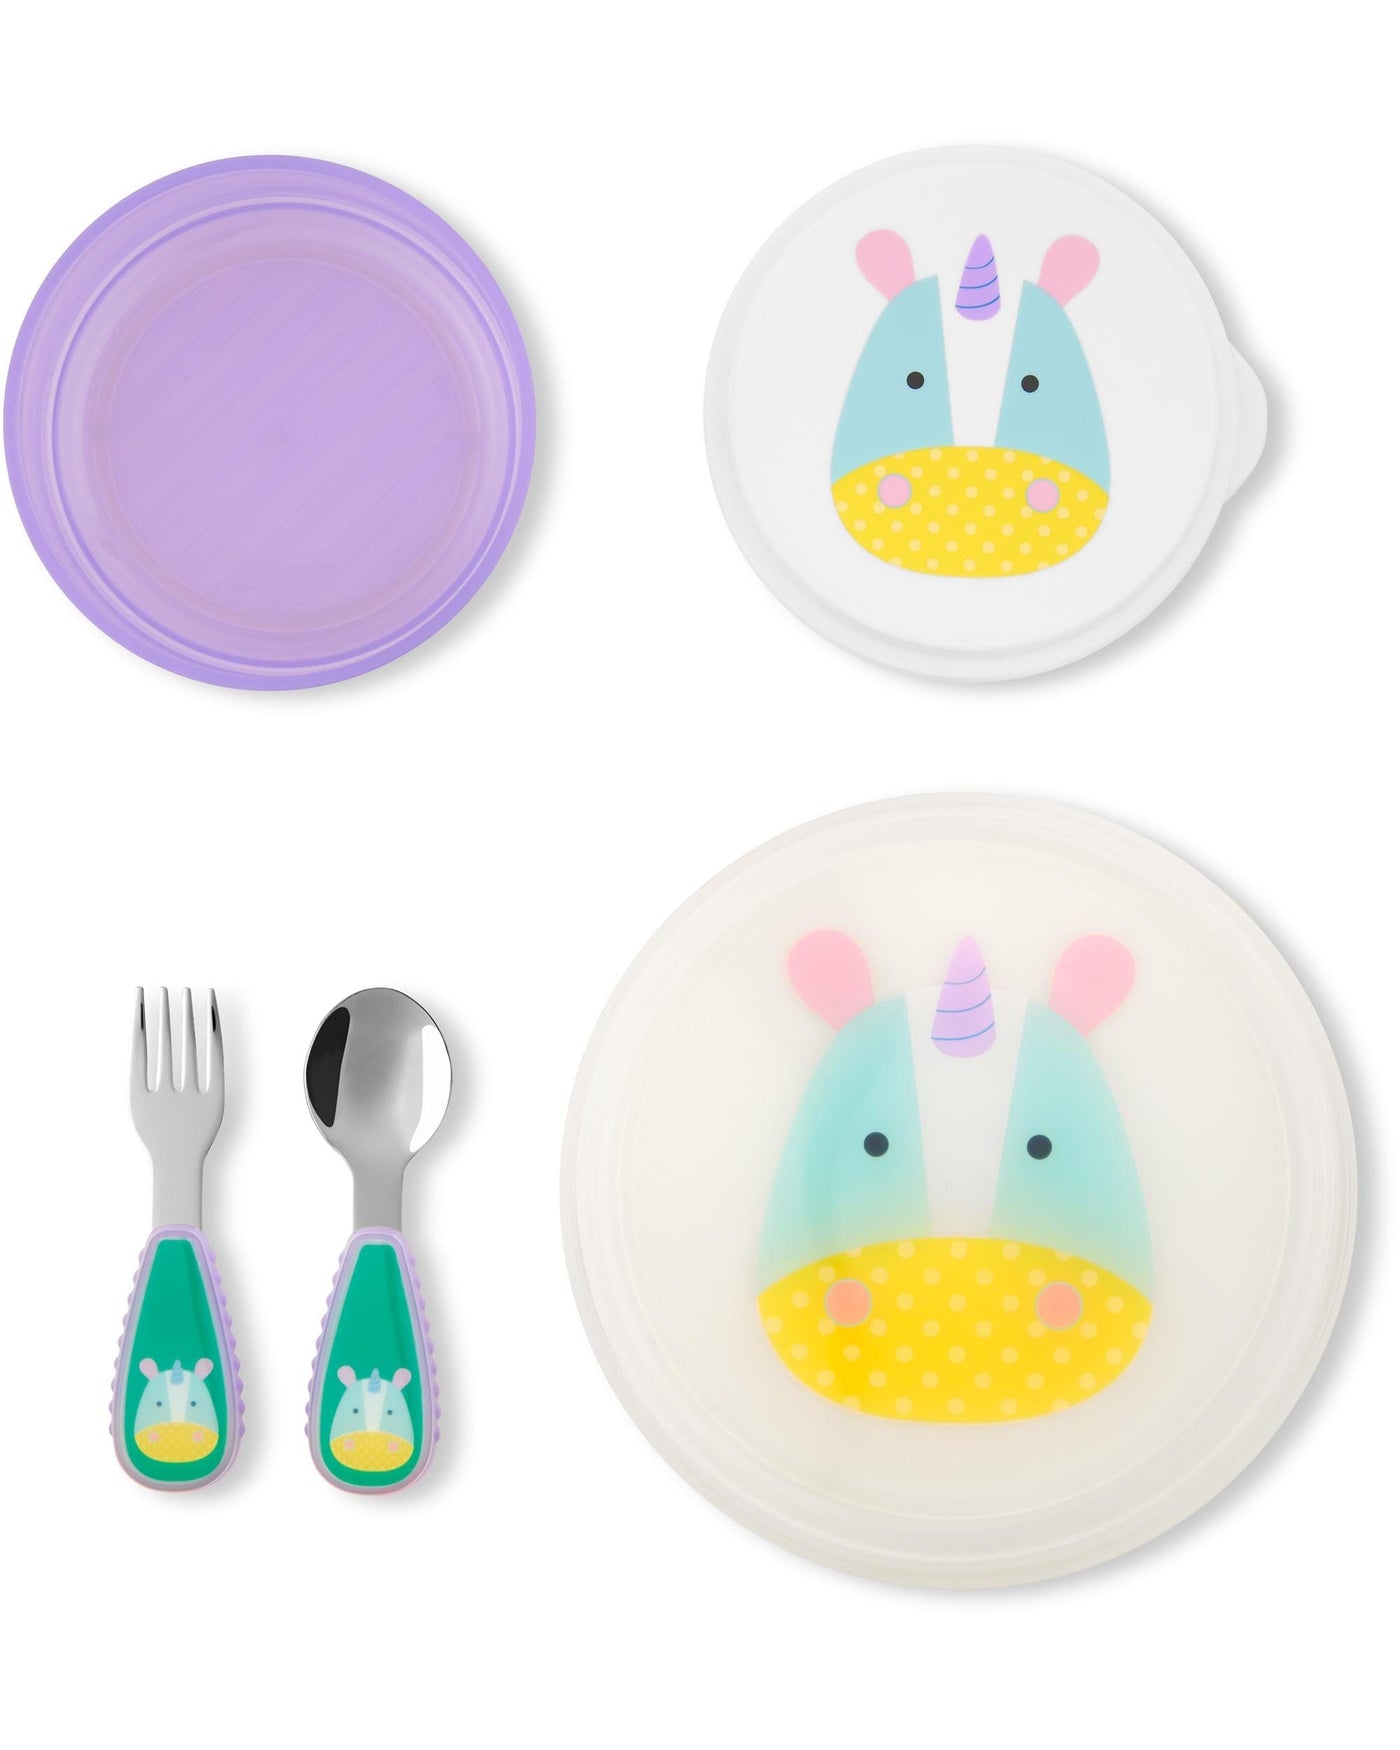 ZOO Table Ready Mealtime Set - Unicorn | Skip Hop by Skip Hop, USA Baby Care